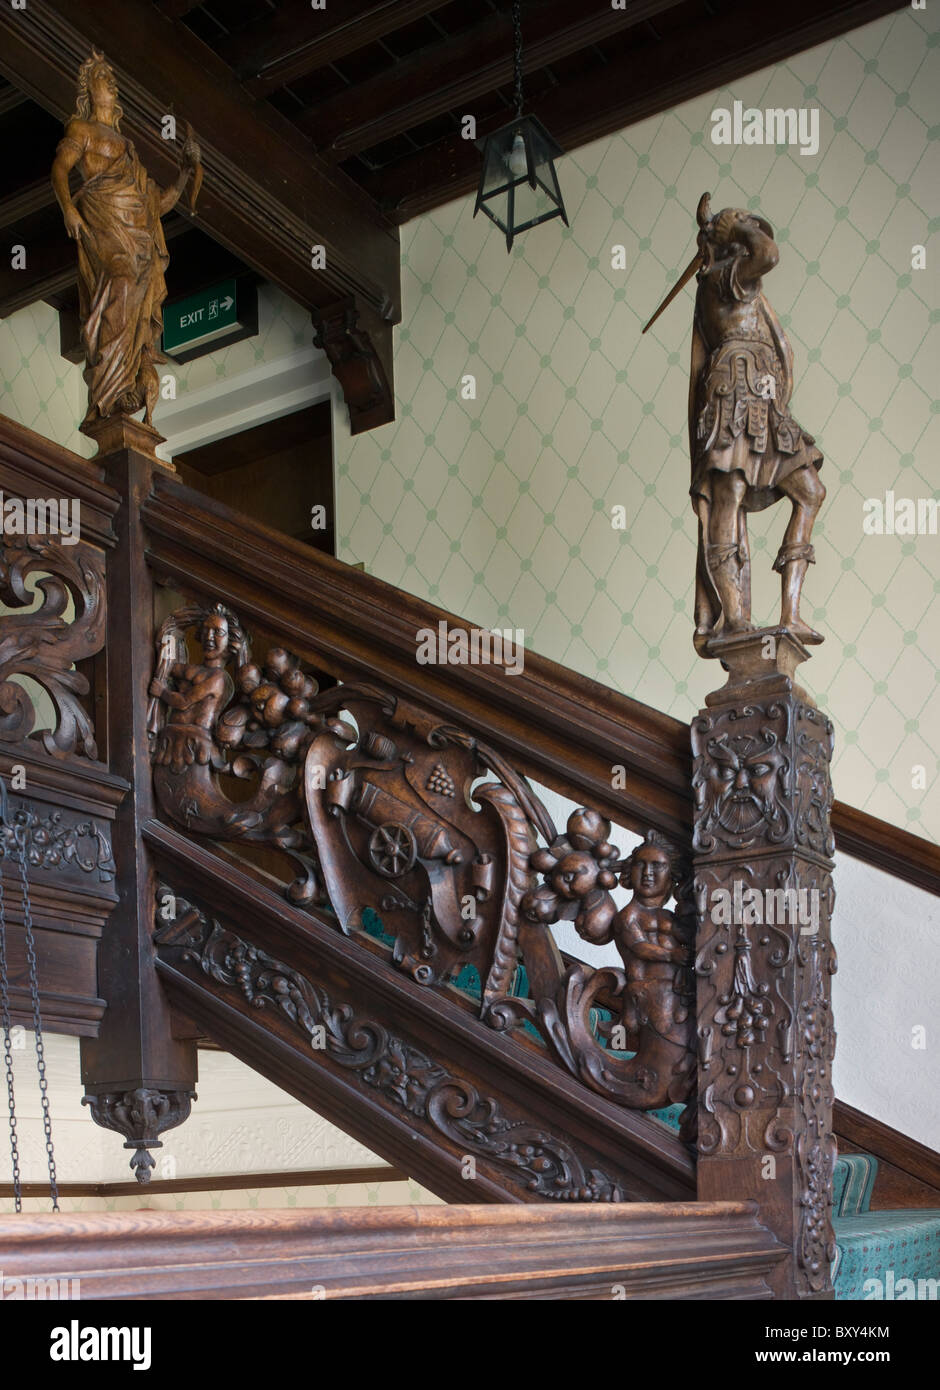 Aldermaston Court staircase Stock Photo